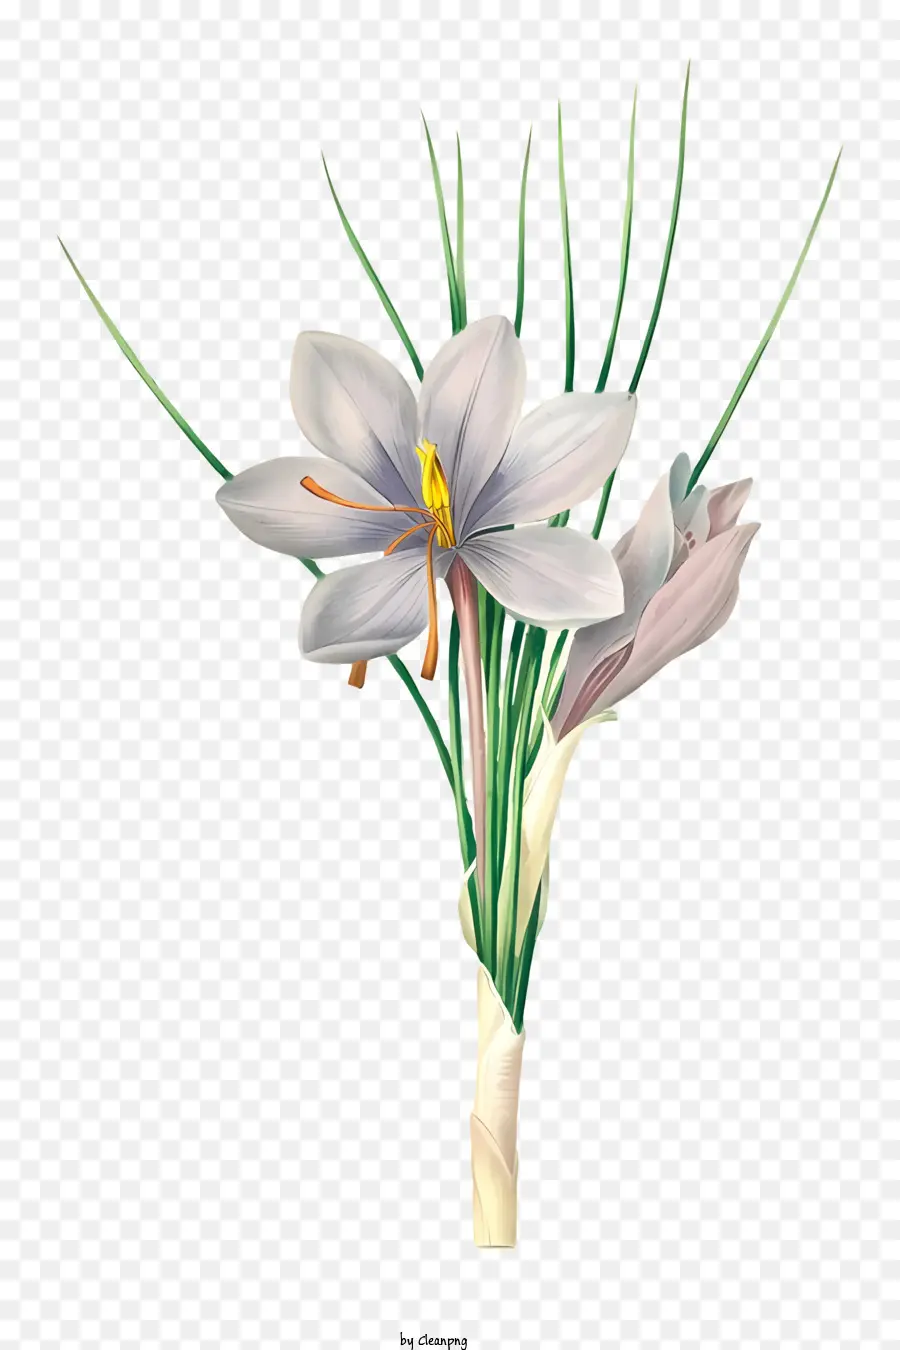 hoa cánh hoa cuộn tròn thân dài màu trắng - Hoa trắng cuộn tròn với trung tâm màu vàng và thân màu tím